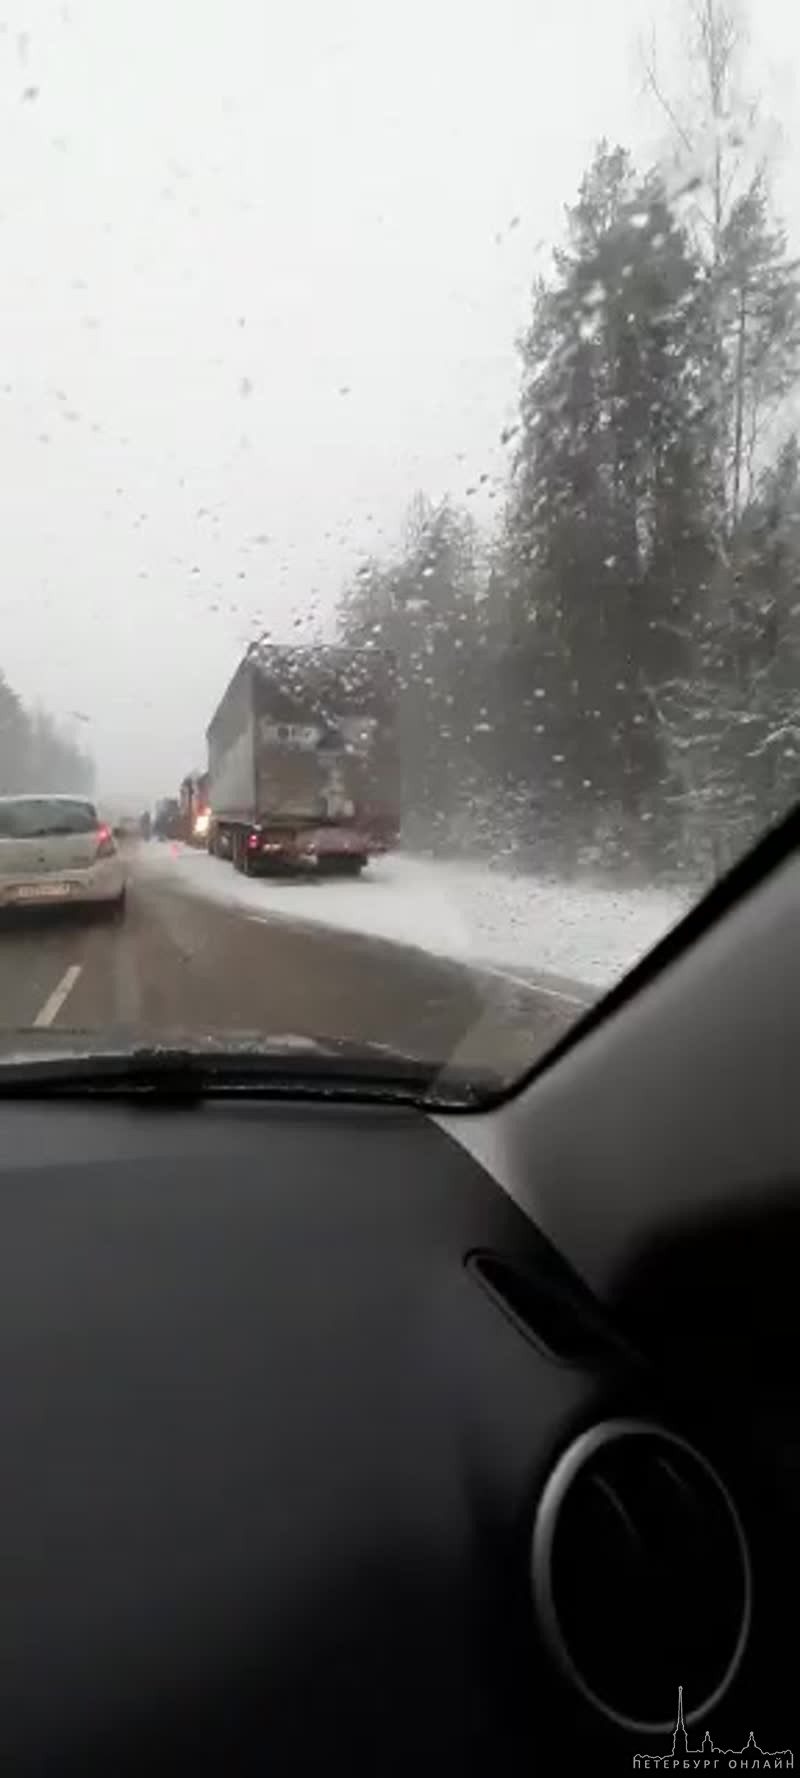 Авария на Мурманском шоссе после деревни Потанино в сторону Санкт-Петербурга... В БМВ пострадали люд...